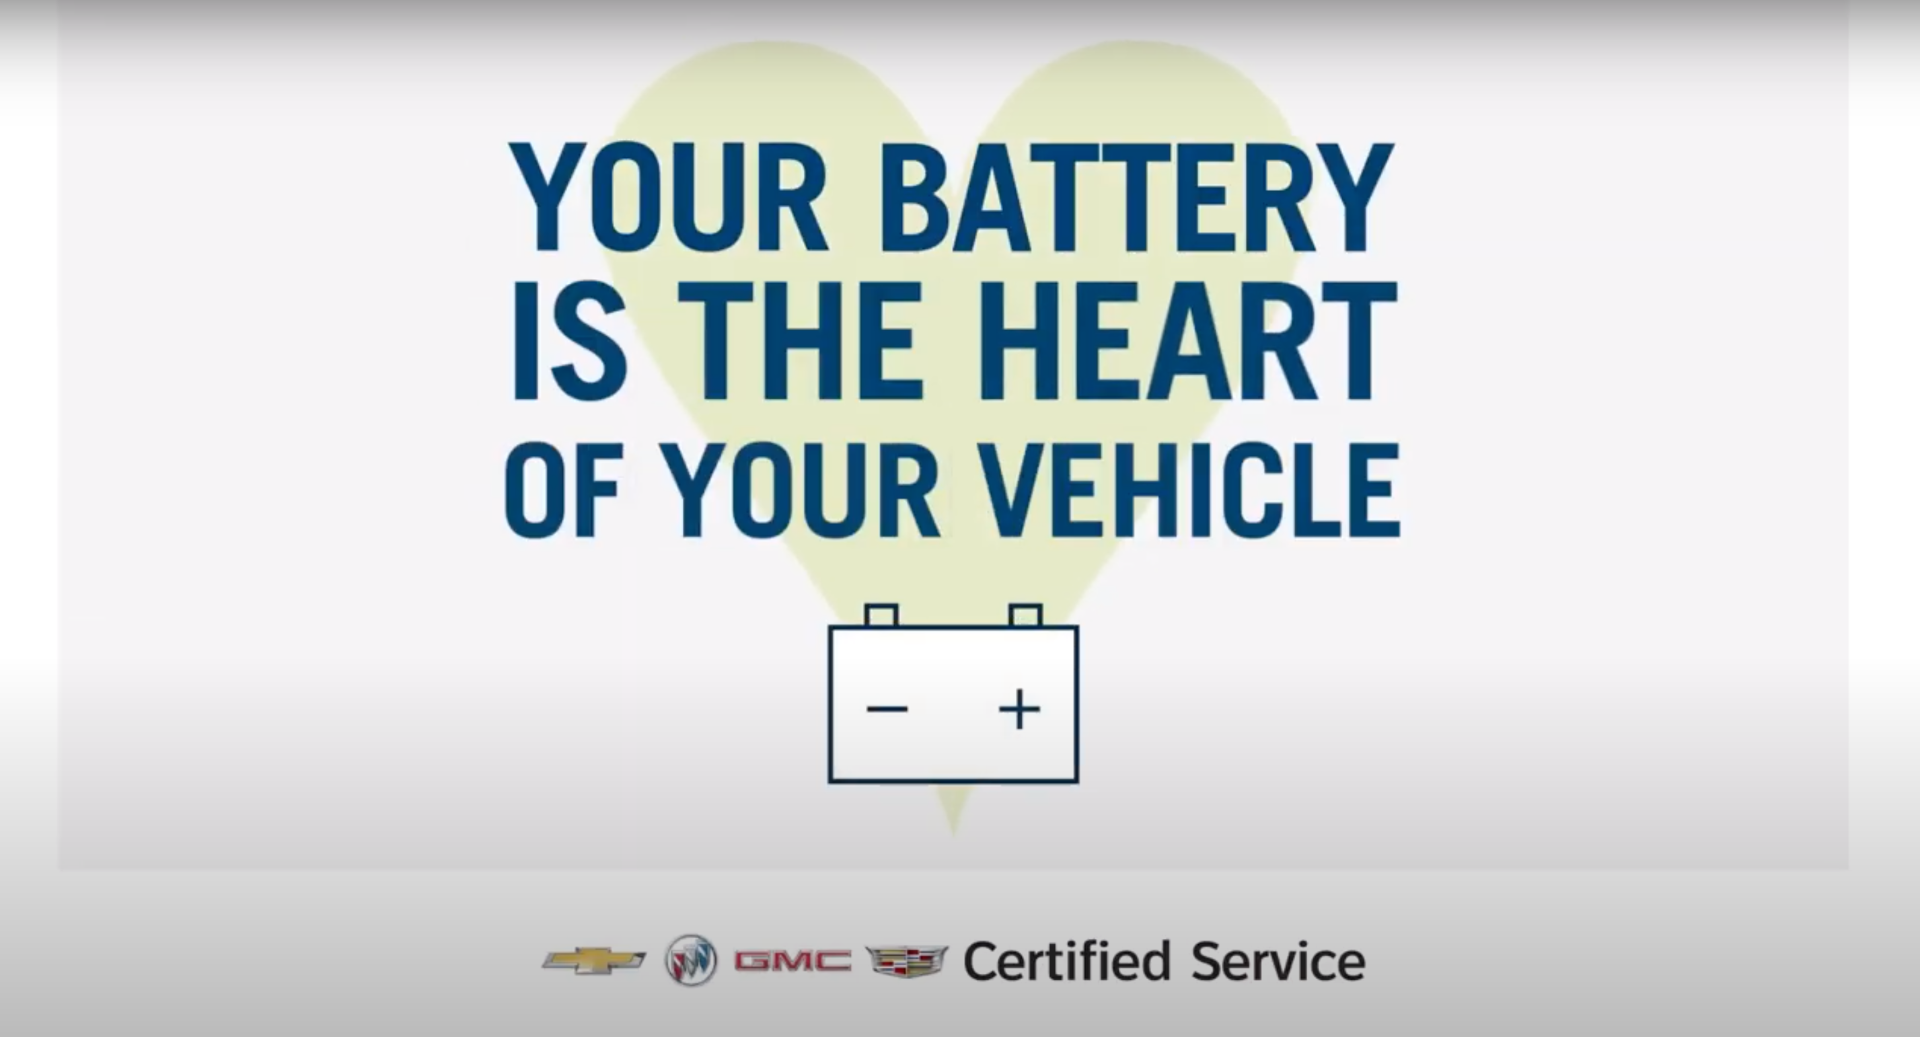 La batterie, c'est le coeur de votre véhicule!